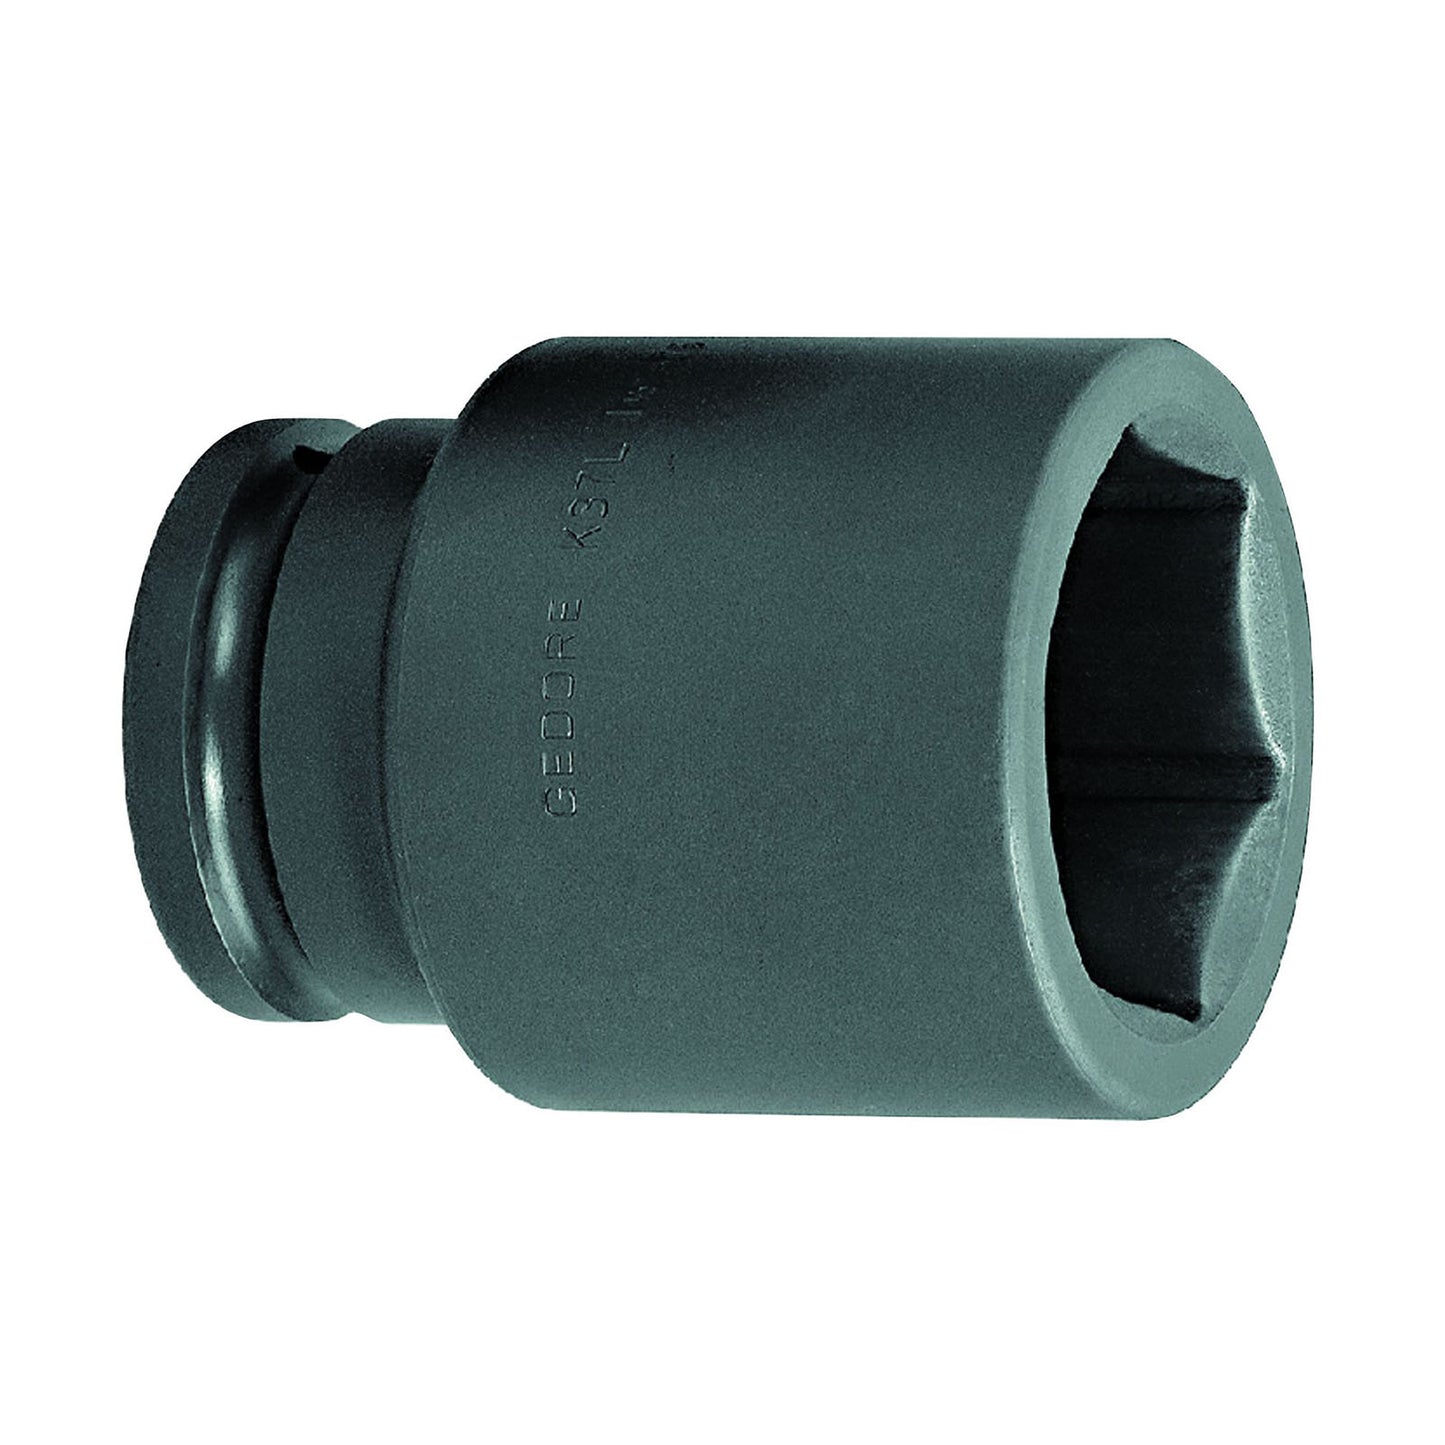 GEDORE K 37 L 90 - XL Impact Socket 1.1/2", 90 mm (6331270)